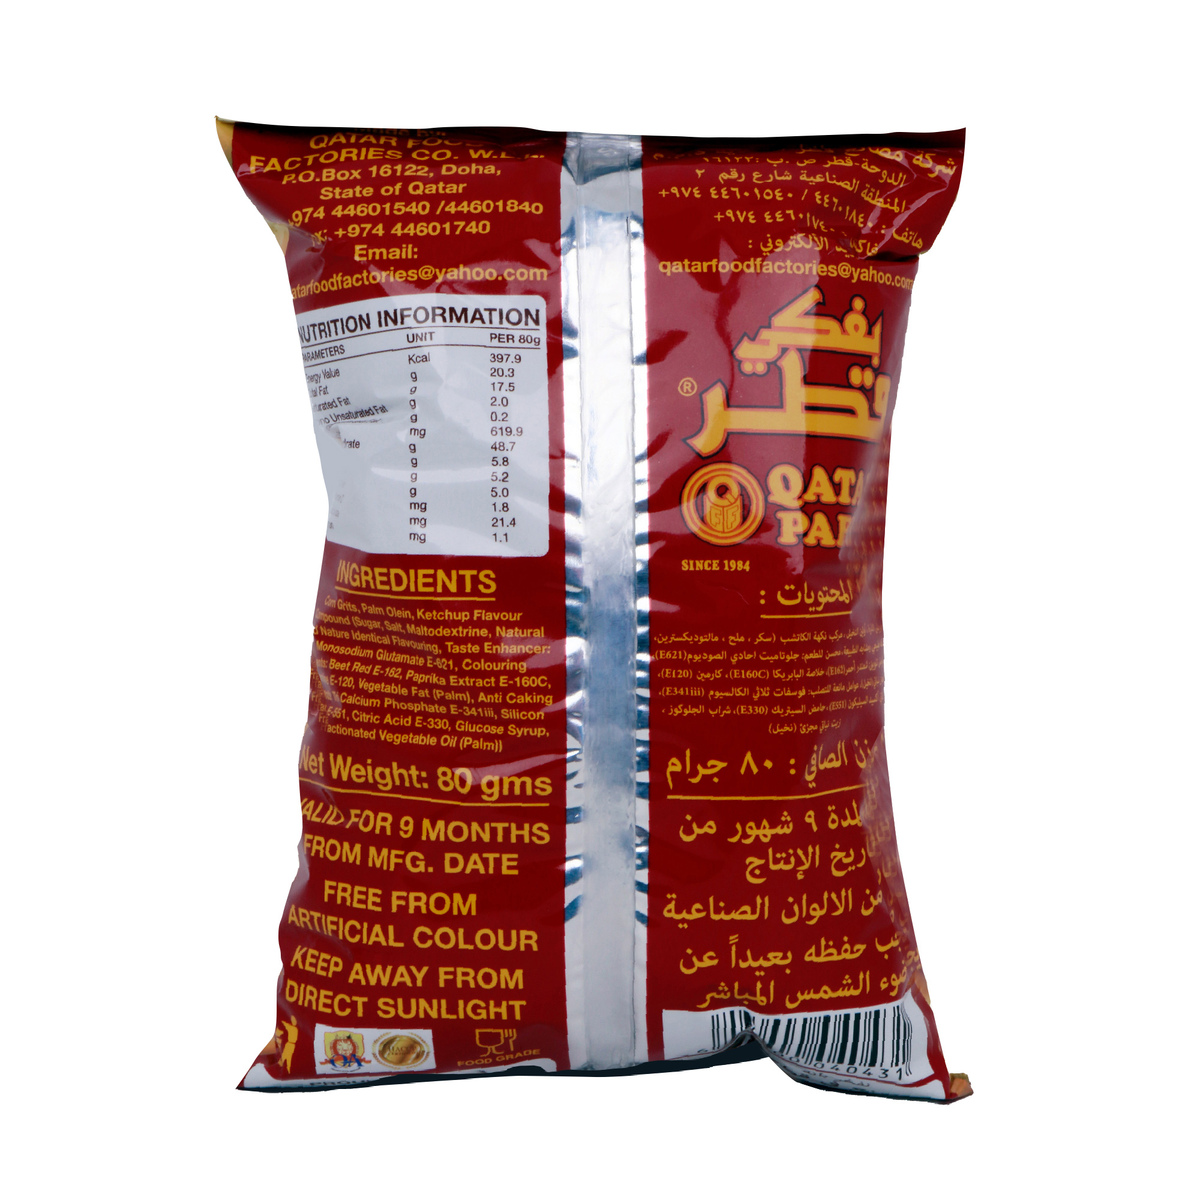 Qatar Pafki Crispy Corn Curls Ketchup 80 g